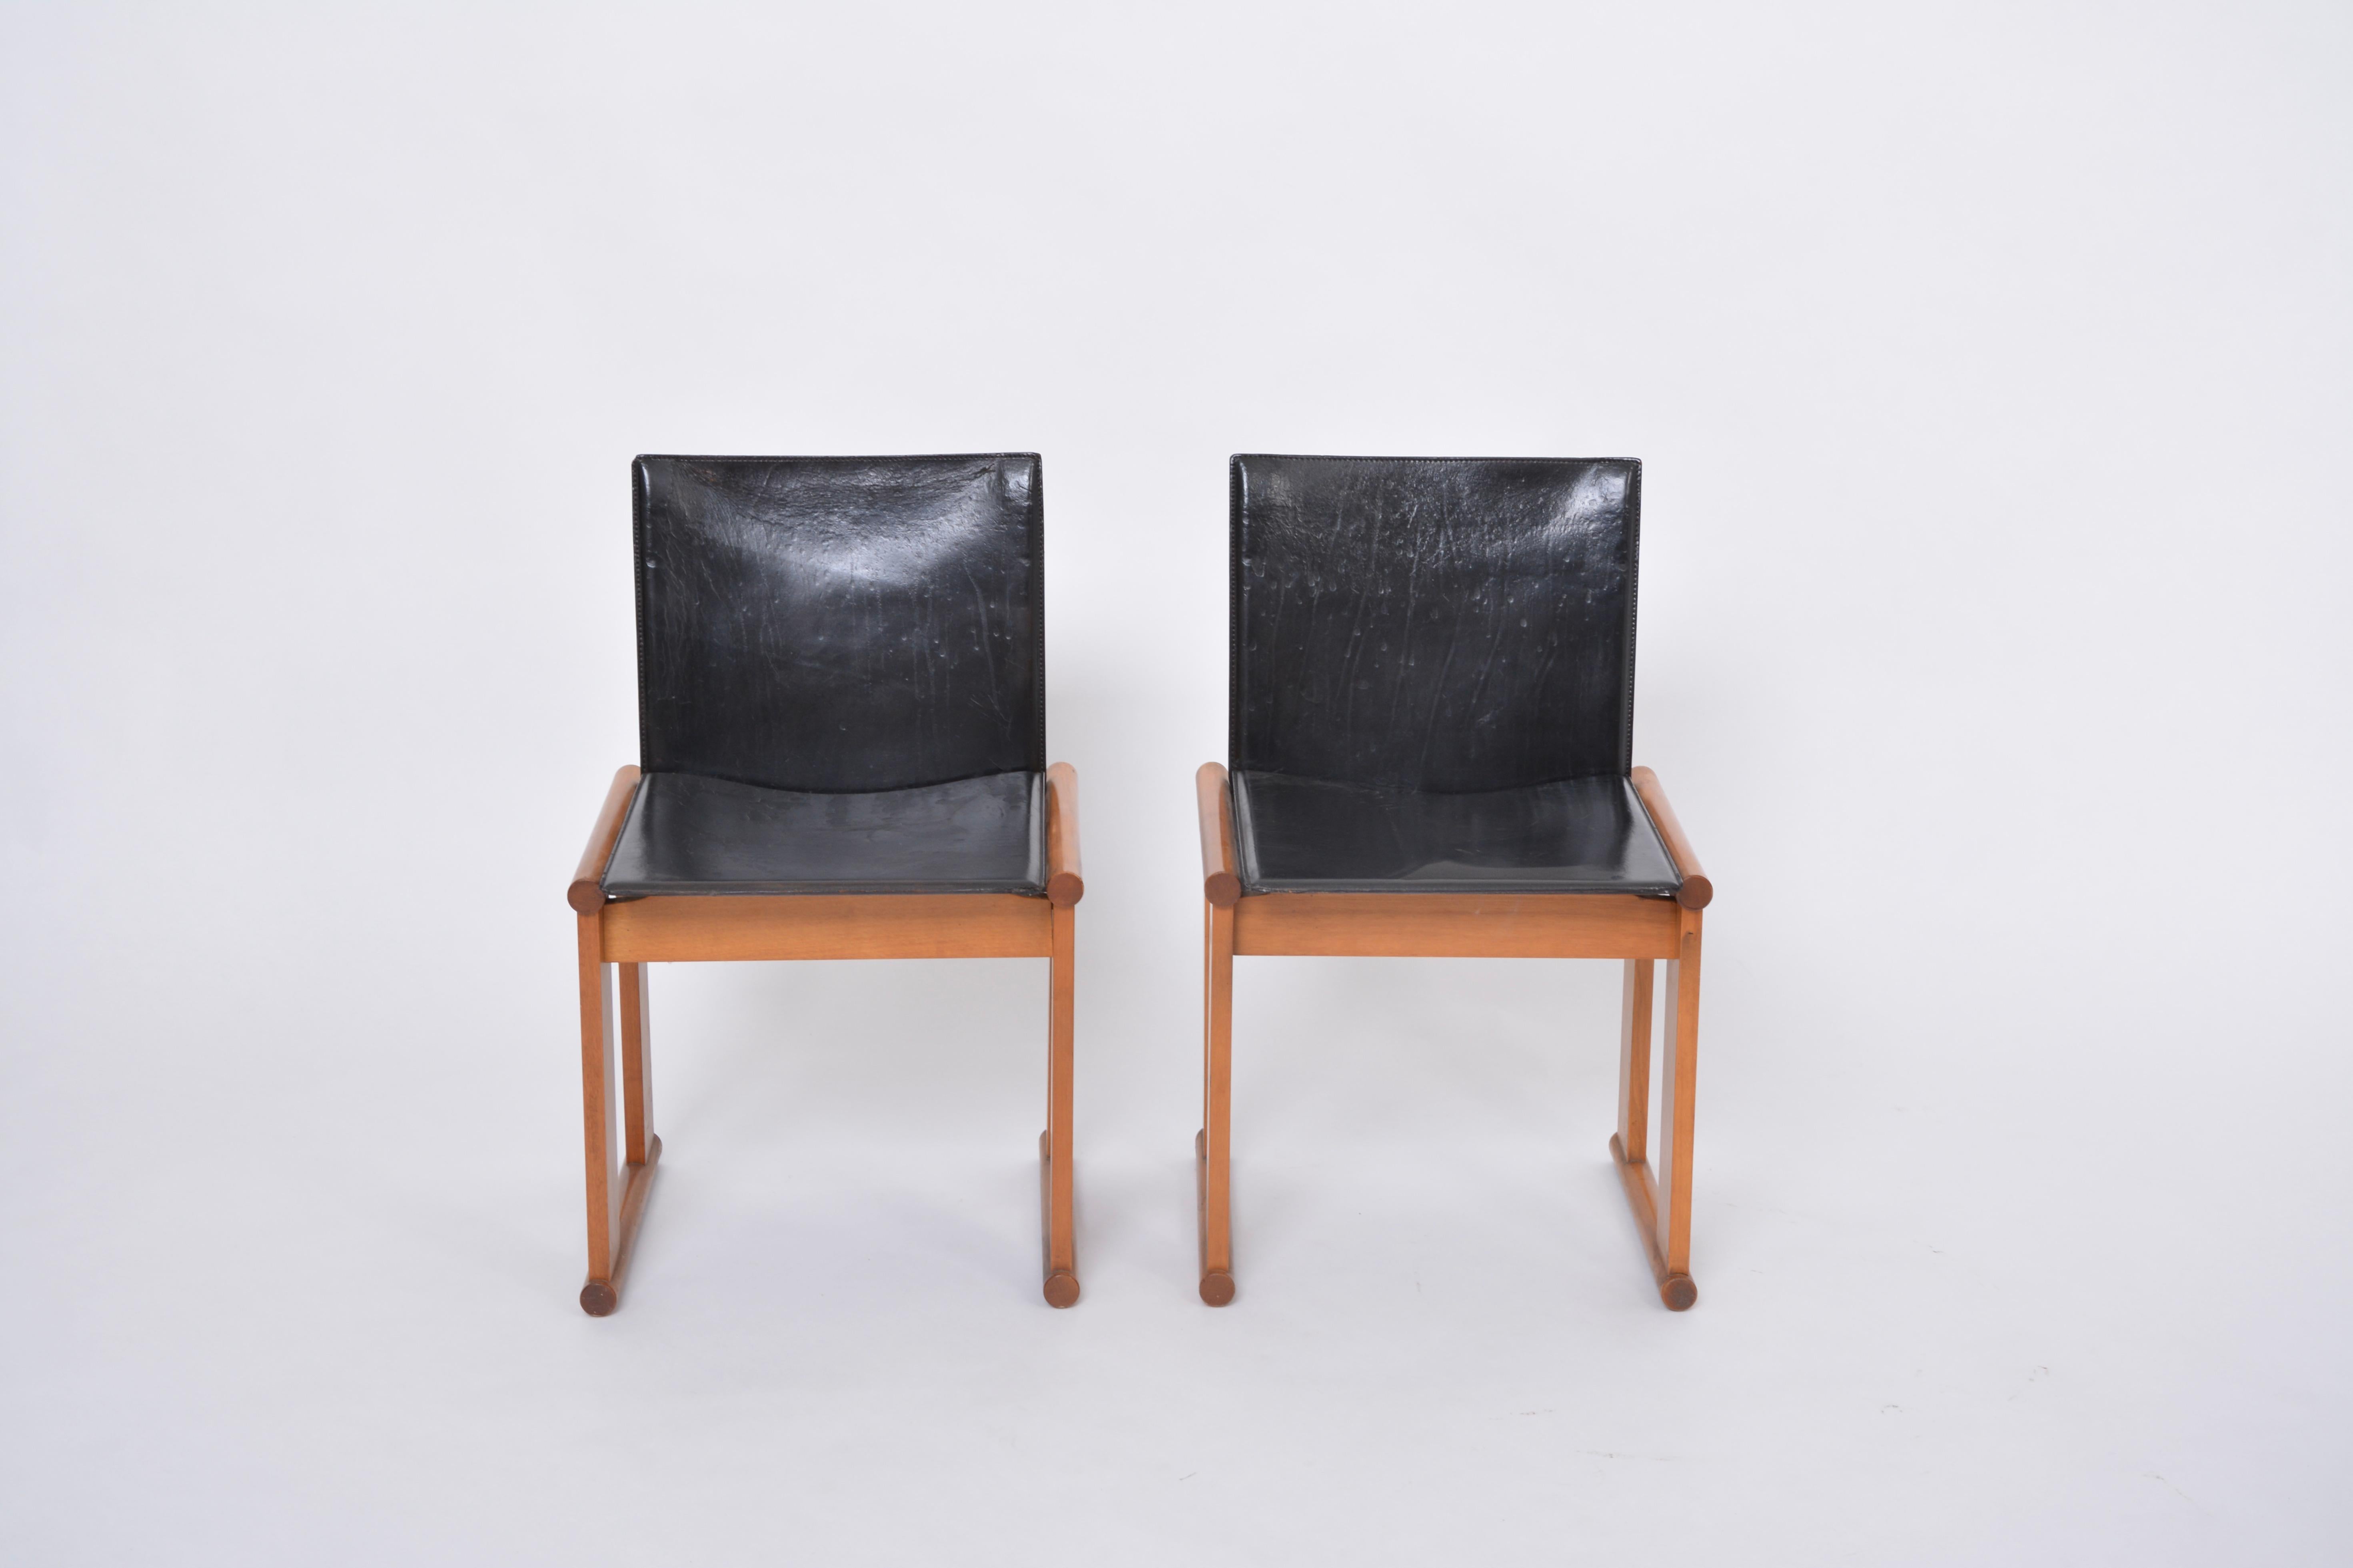 Ein Paar Afra & Tobia Scarpa zugeschriebene Esszimmerstühle aus schwarzem Leder
Dieses Paar Esszimmerstühle zeigt starke Ähnlichkeit mit zwei Entwürfen der berühmten italienischen Designer Afra & Tobia Scarpa: die Stühle 'Monk' (1974) und die Stühle